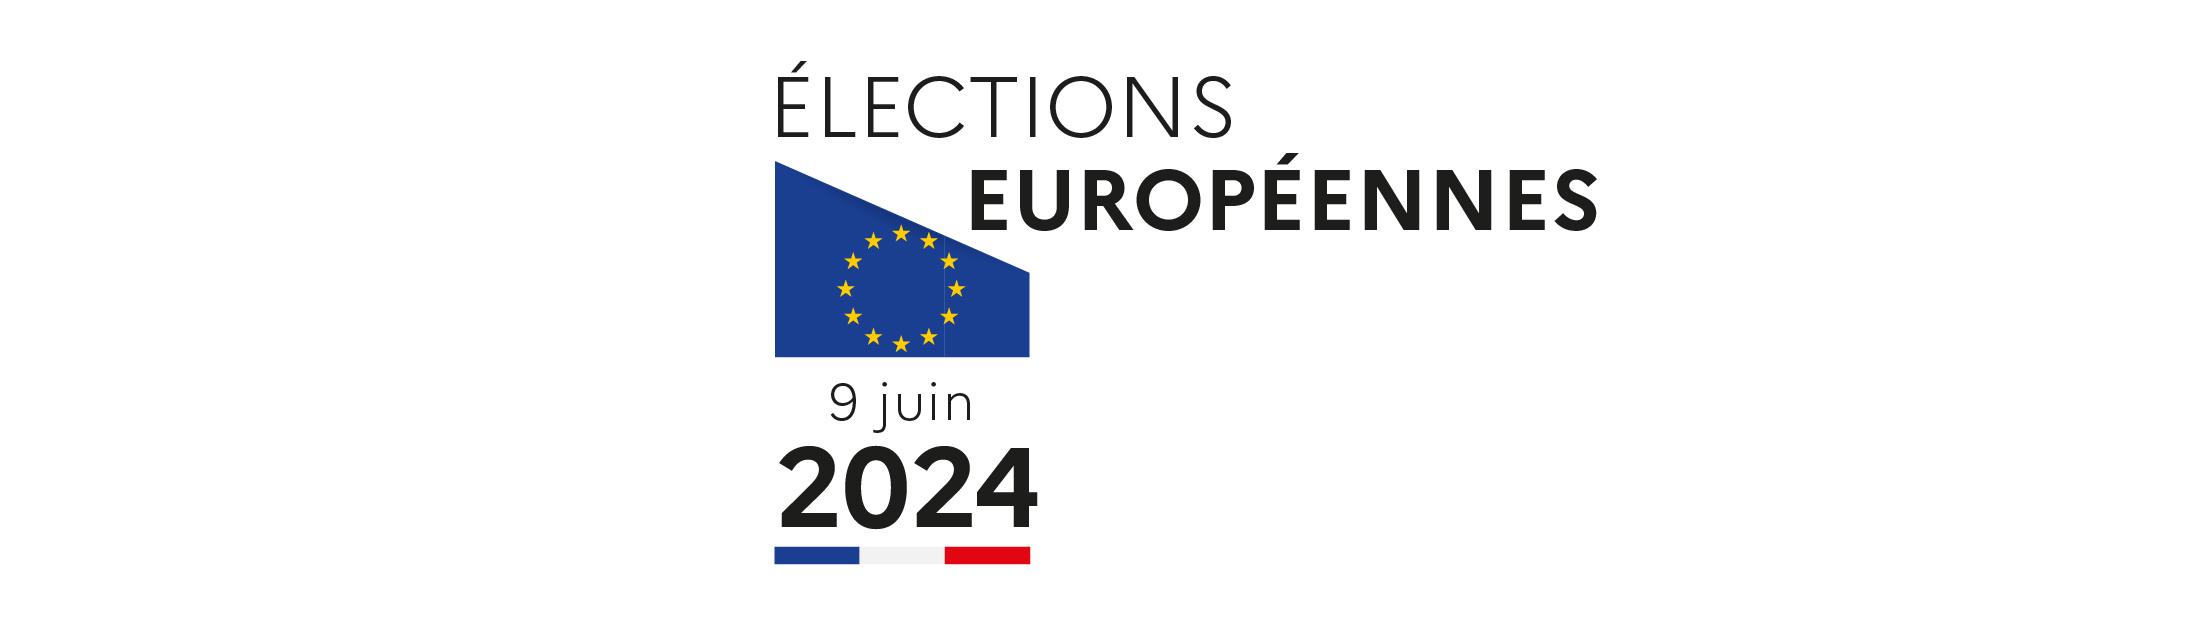 Logo elections européennes 9 juin 2024